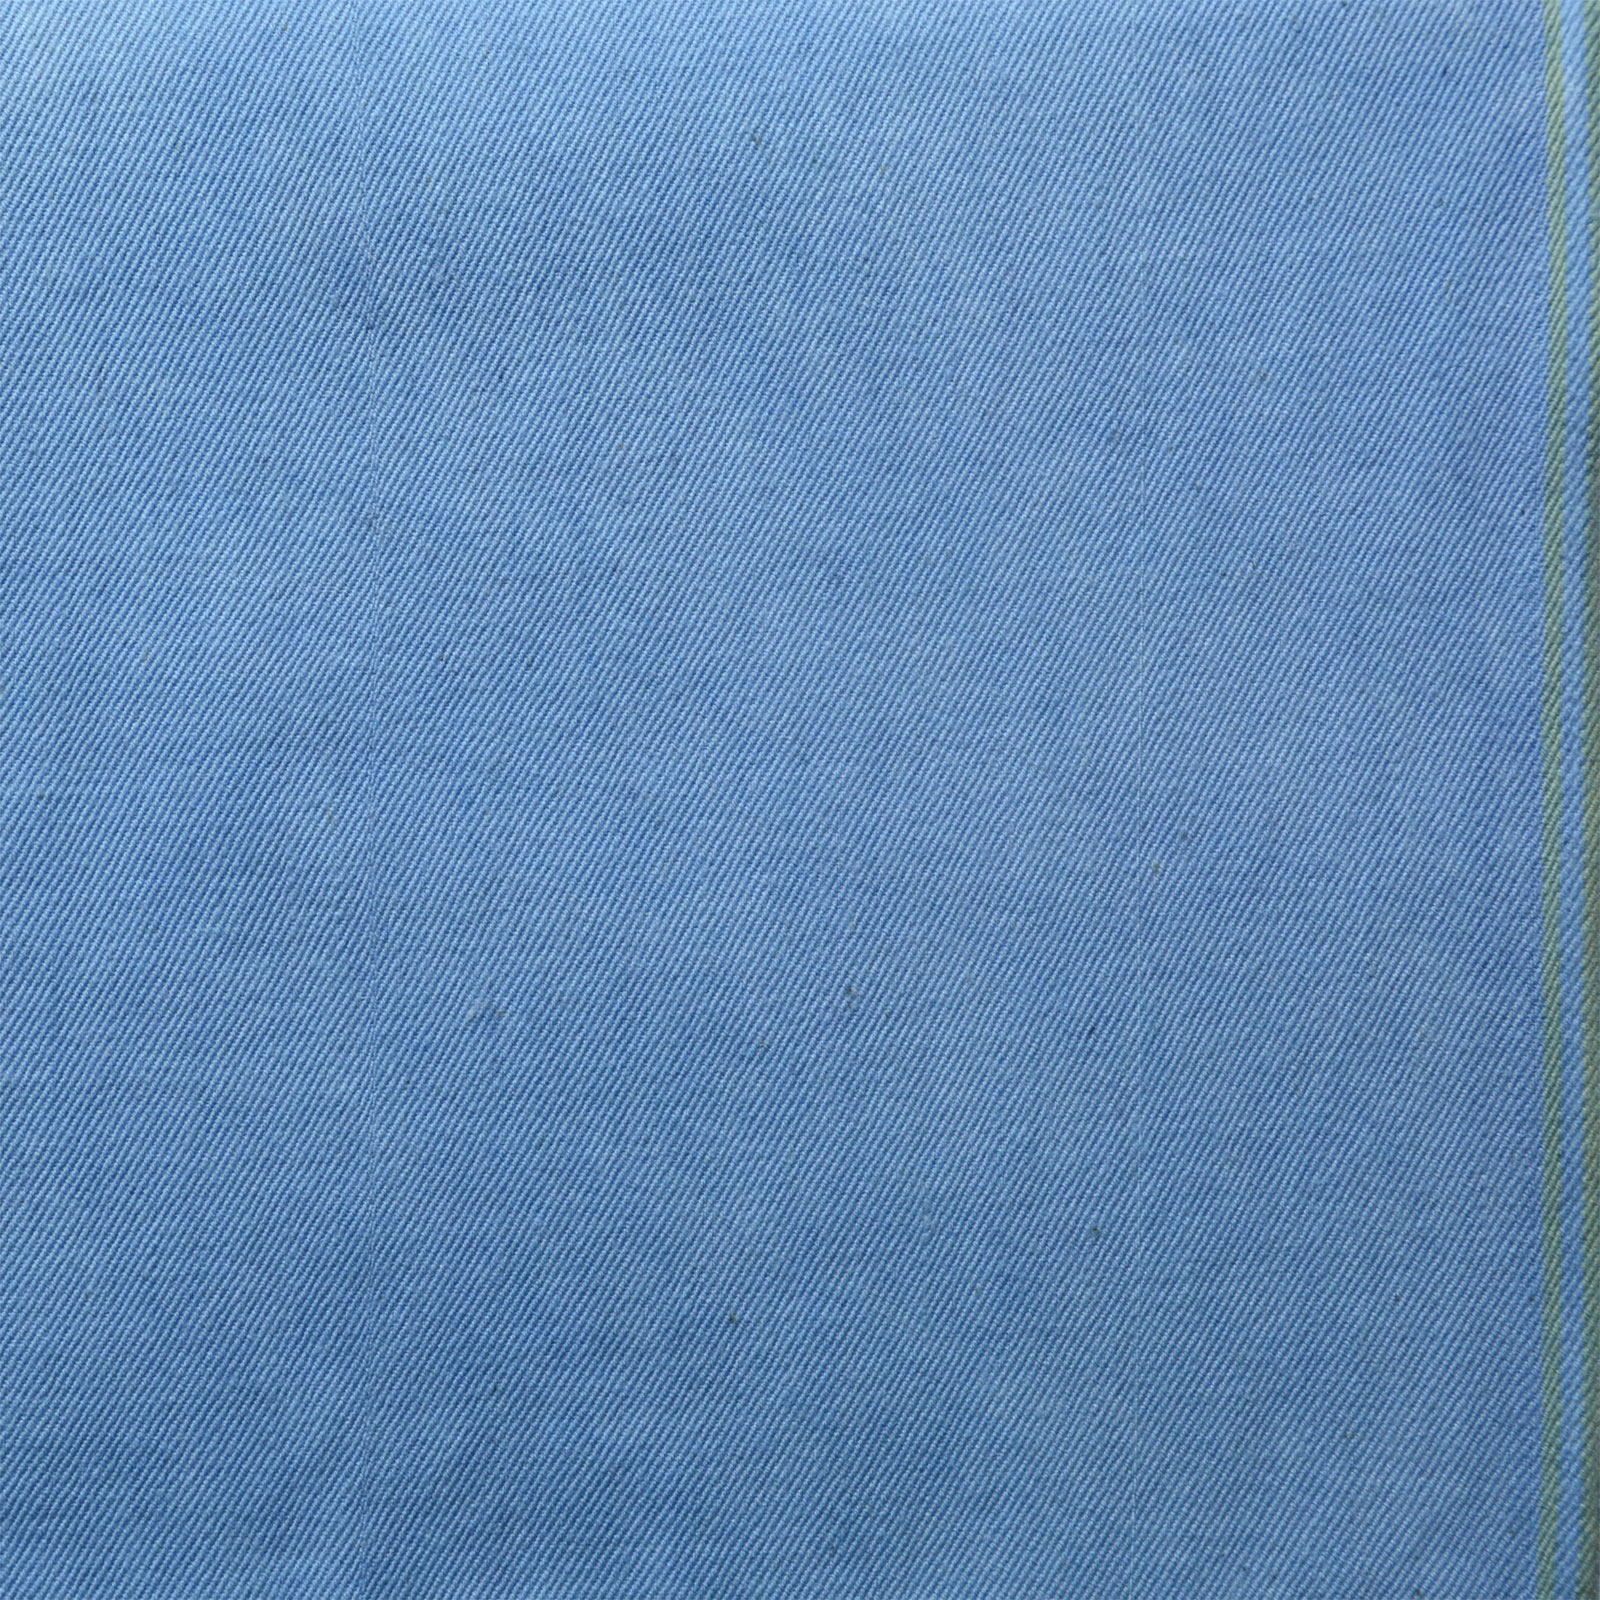 14 Oz Indigo Blue Washed Upholstery Denim Fabric | OnlineFabricStore